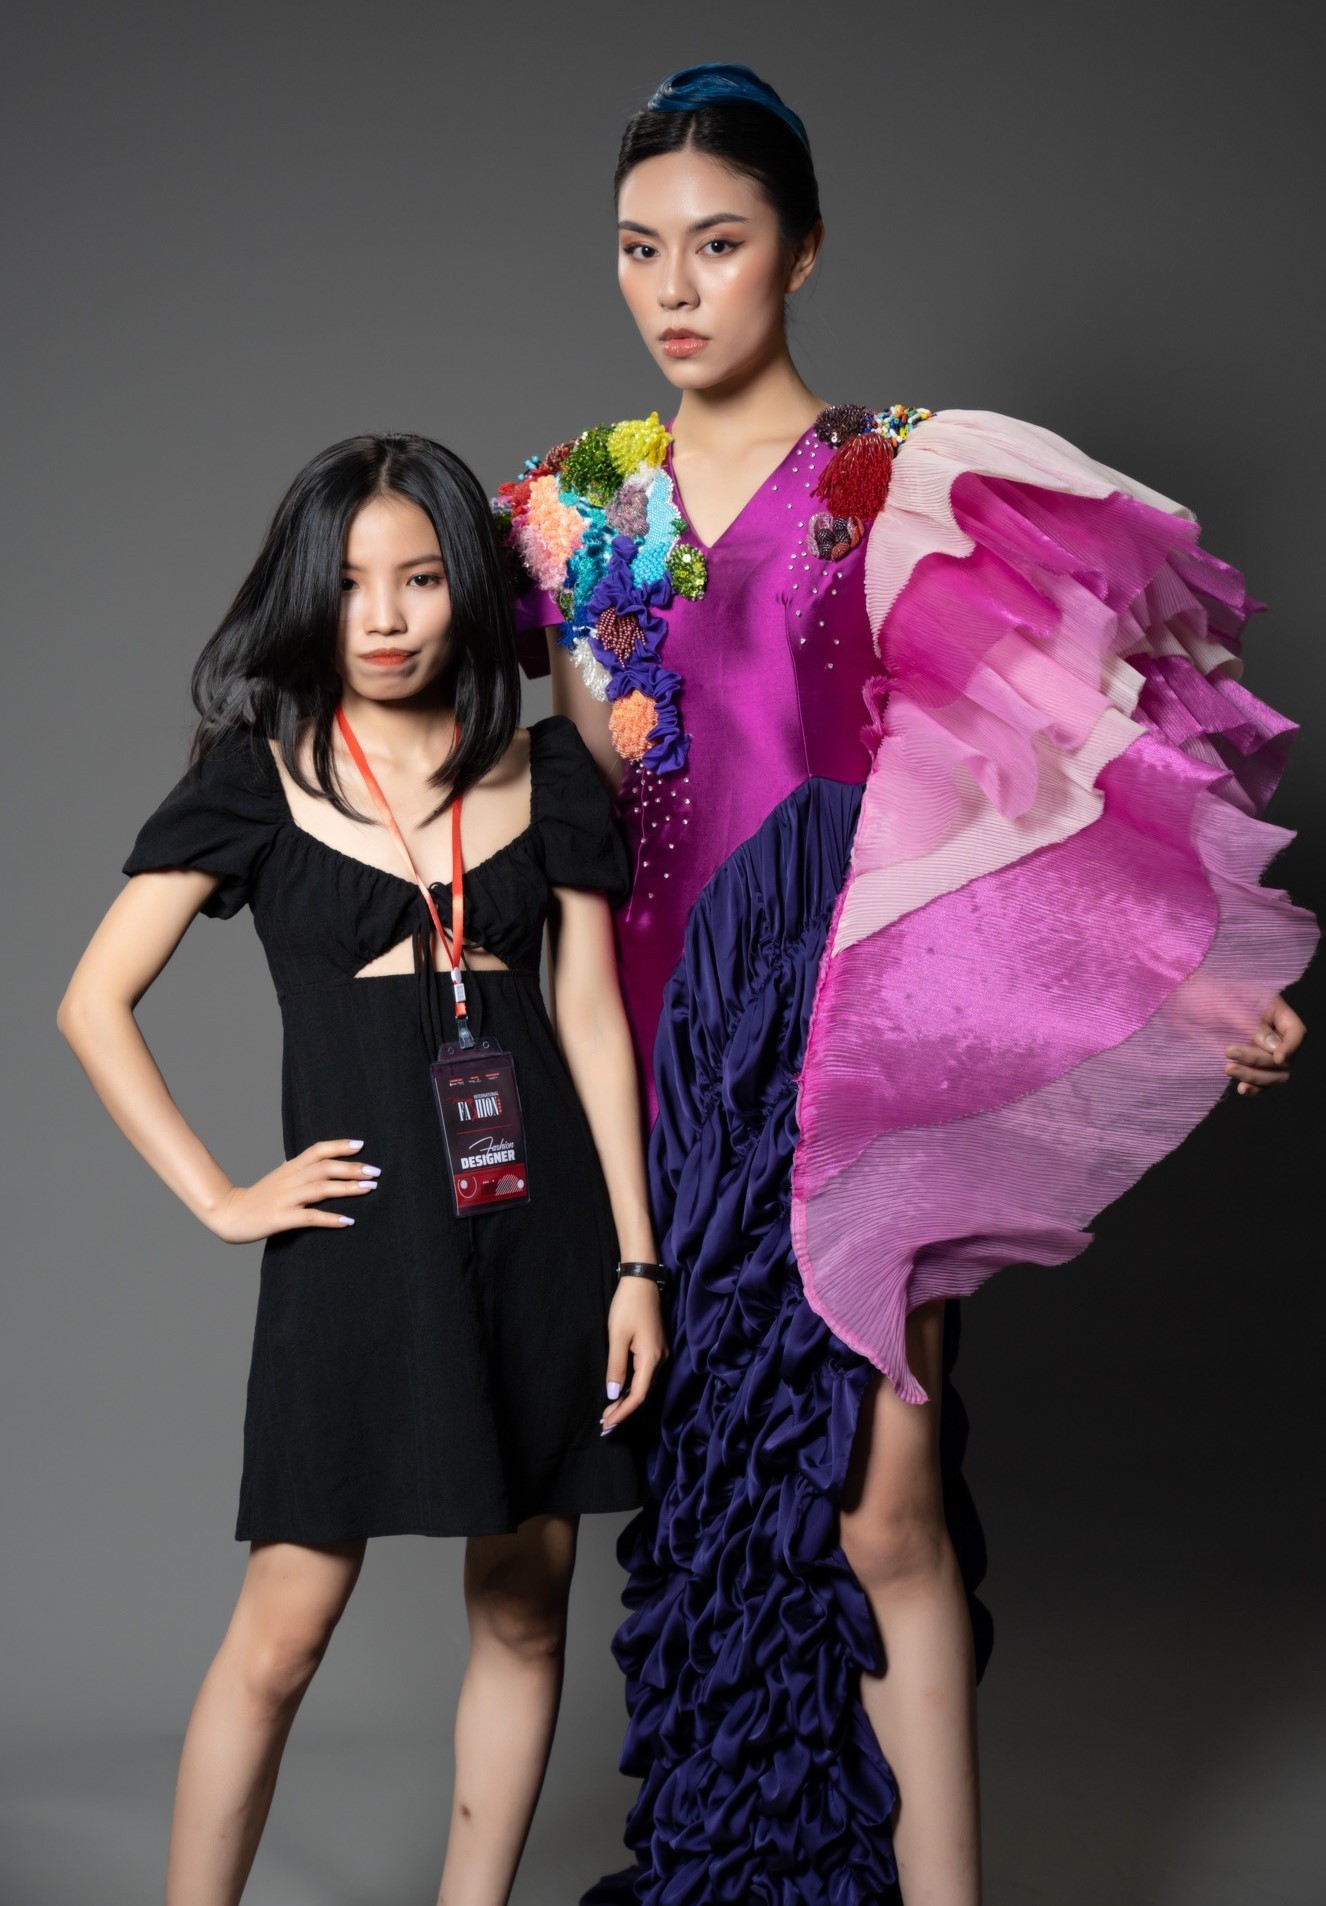 ngam-nhin-nhung-thiet-ke-an-tuong-cua-sinh-vien-dh-mo-ha-noi-tai-le-cong-bo-vietnam-international-fashion-tour-dien-dan-du-lich-3-dulichvn-1655102238.jpeg